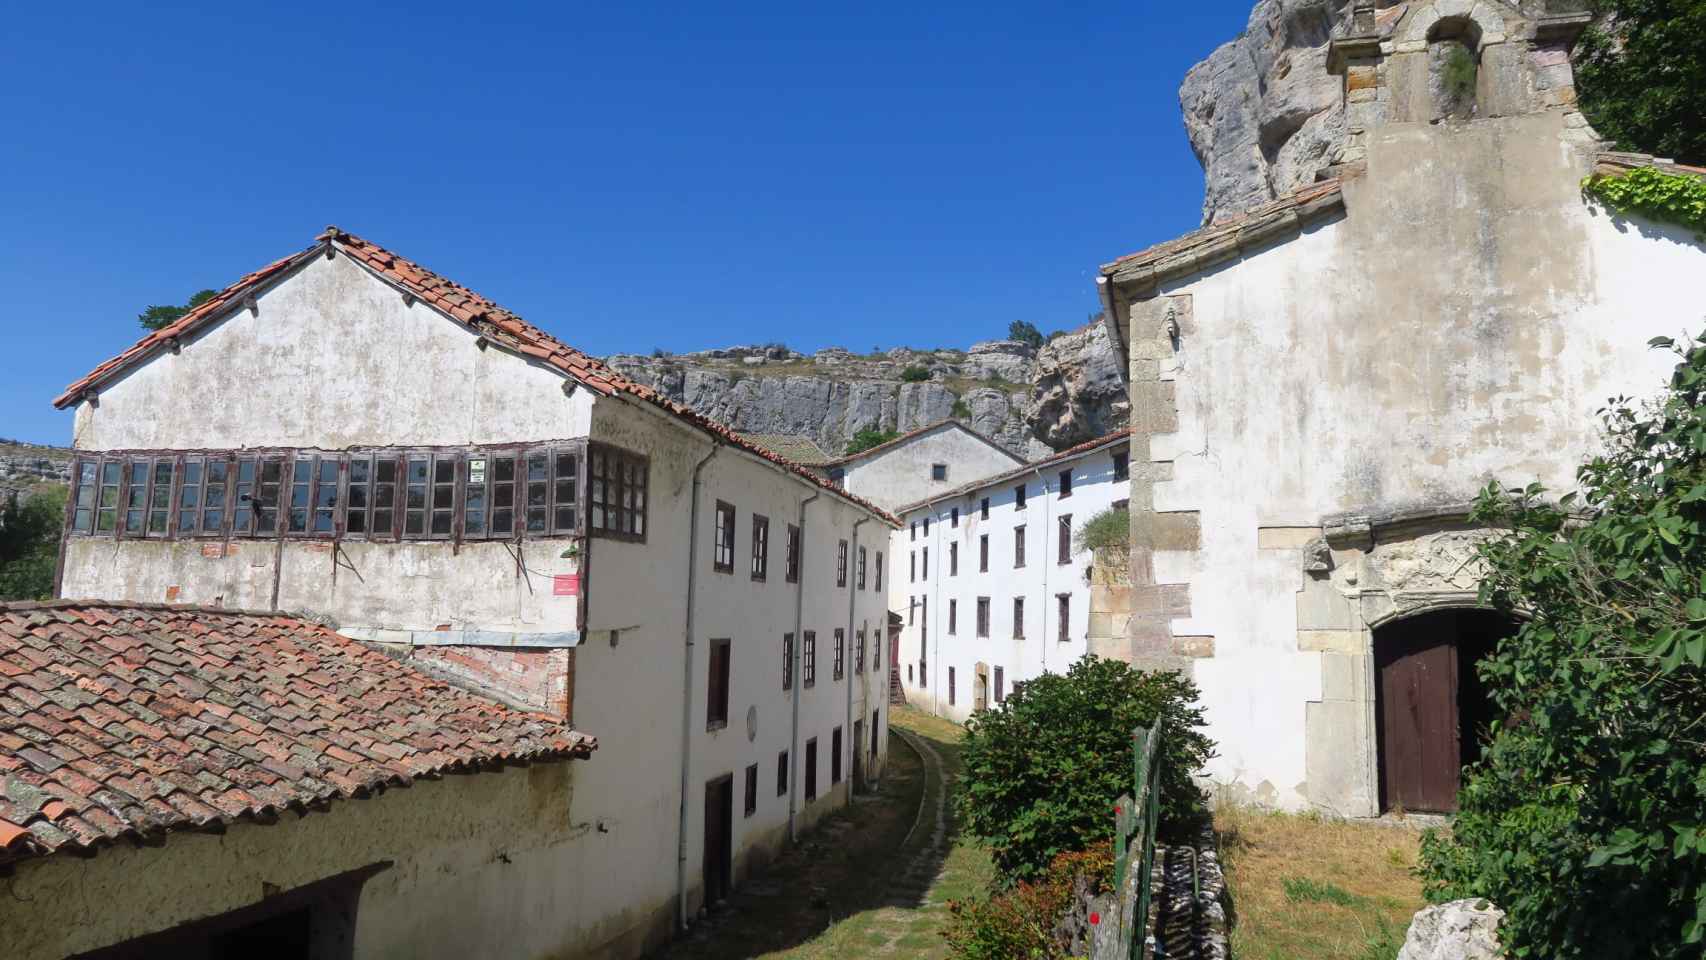 La capilla y viviendas de la aldea de Palencia